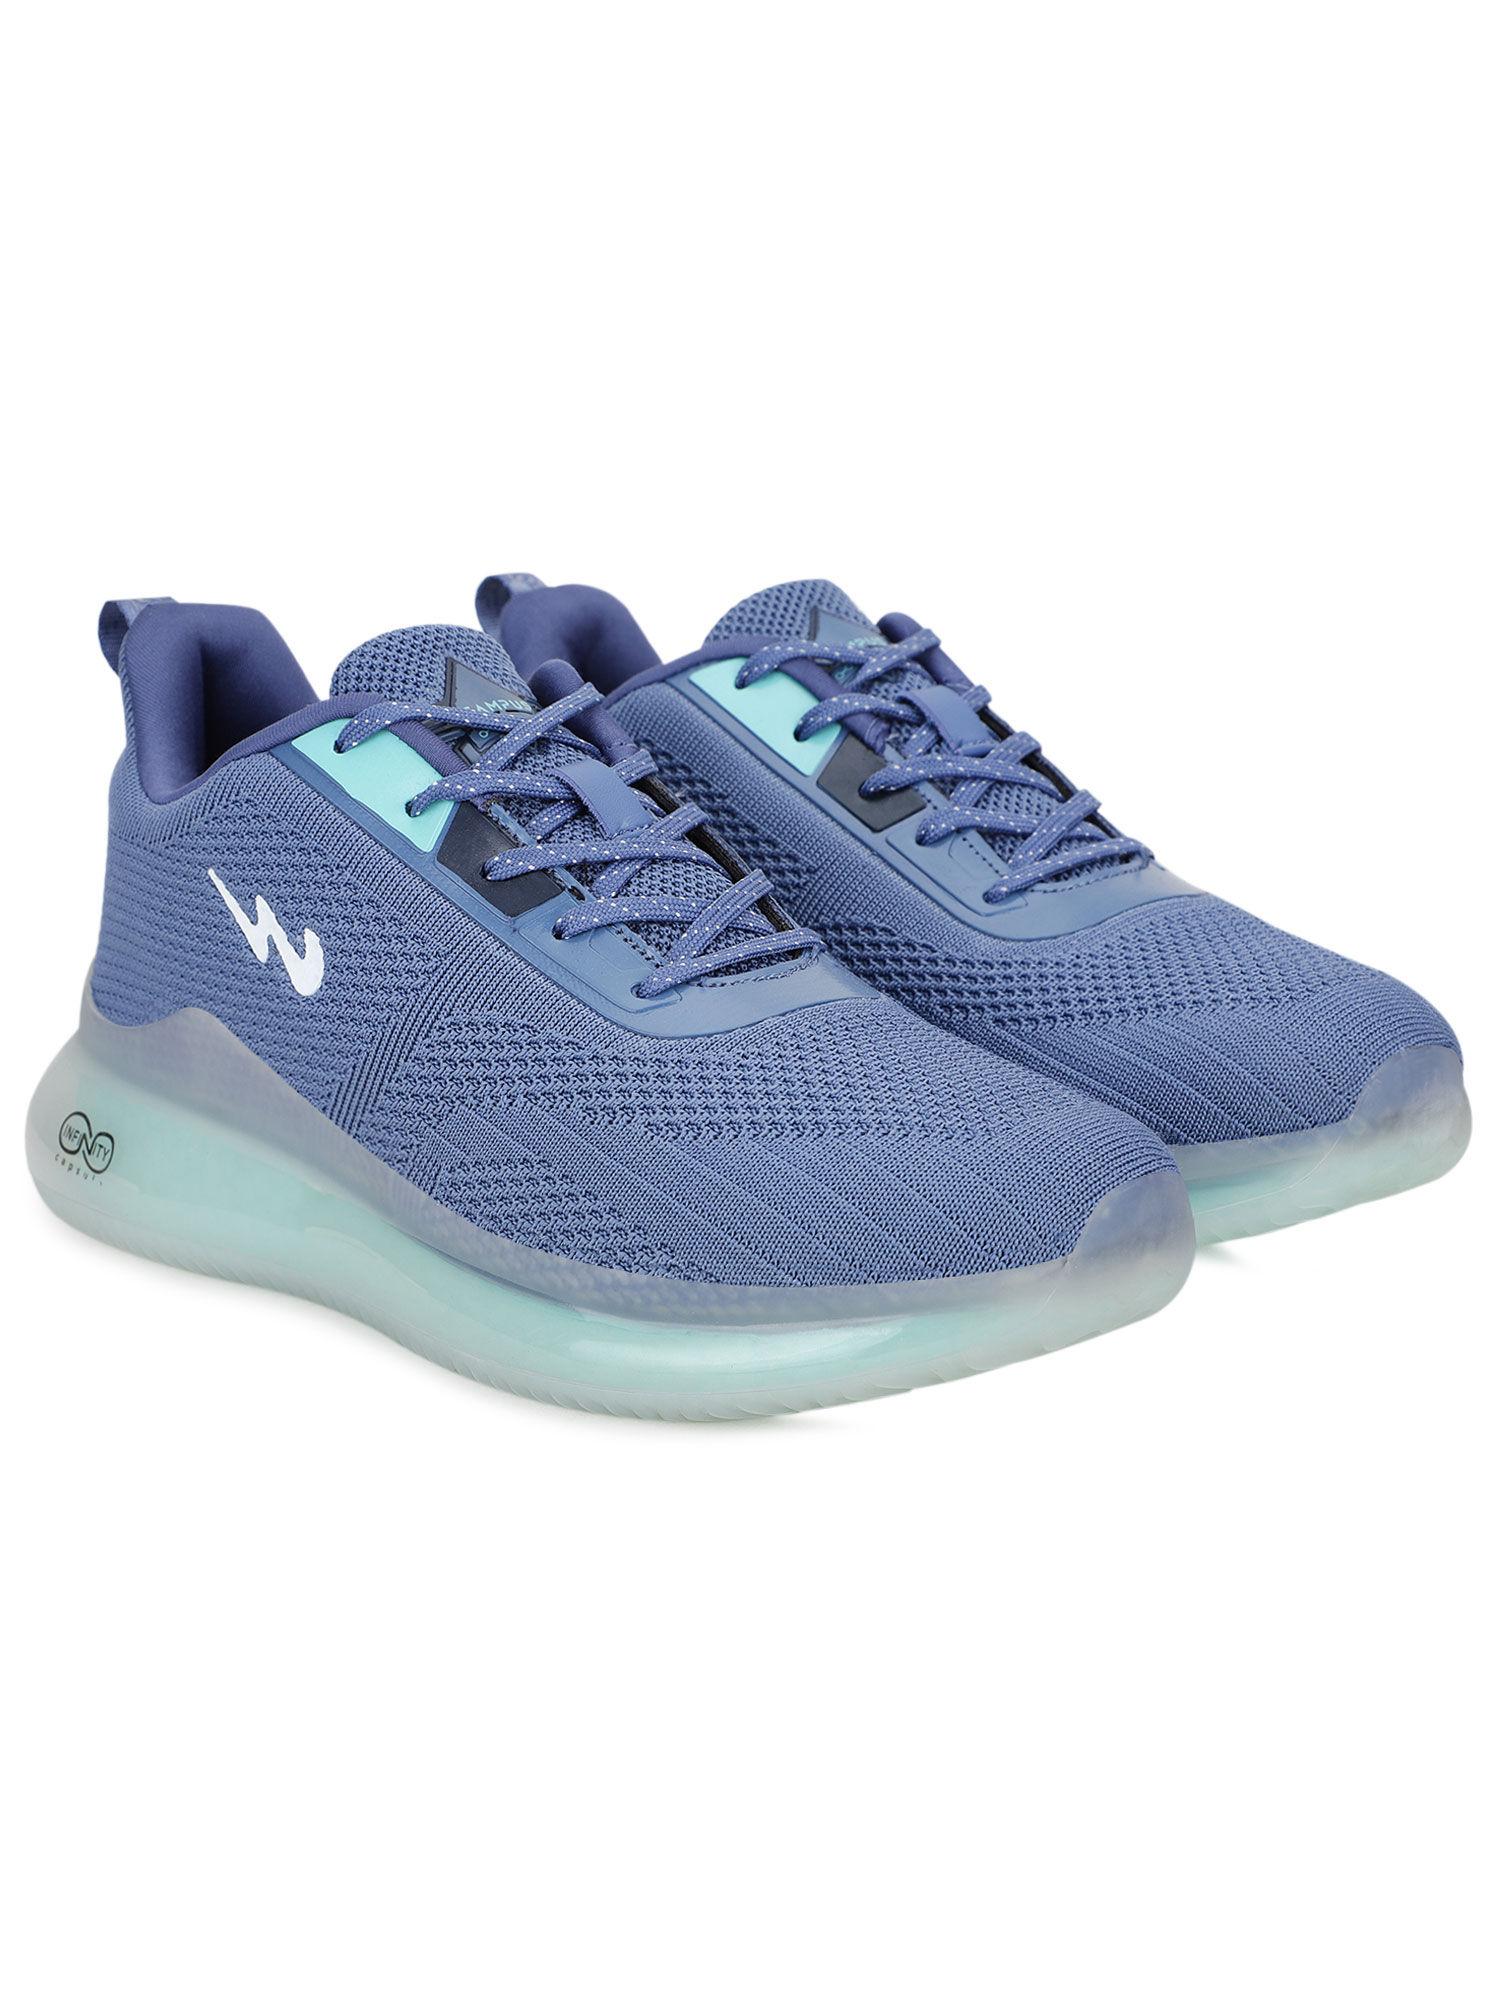 artemis-blue-running-shoes-for-men